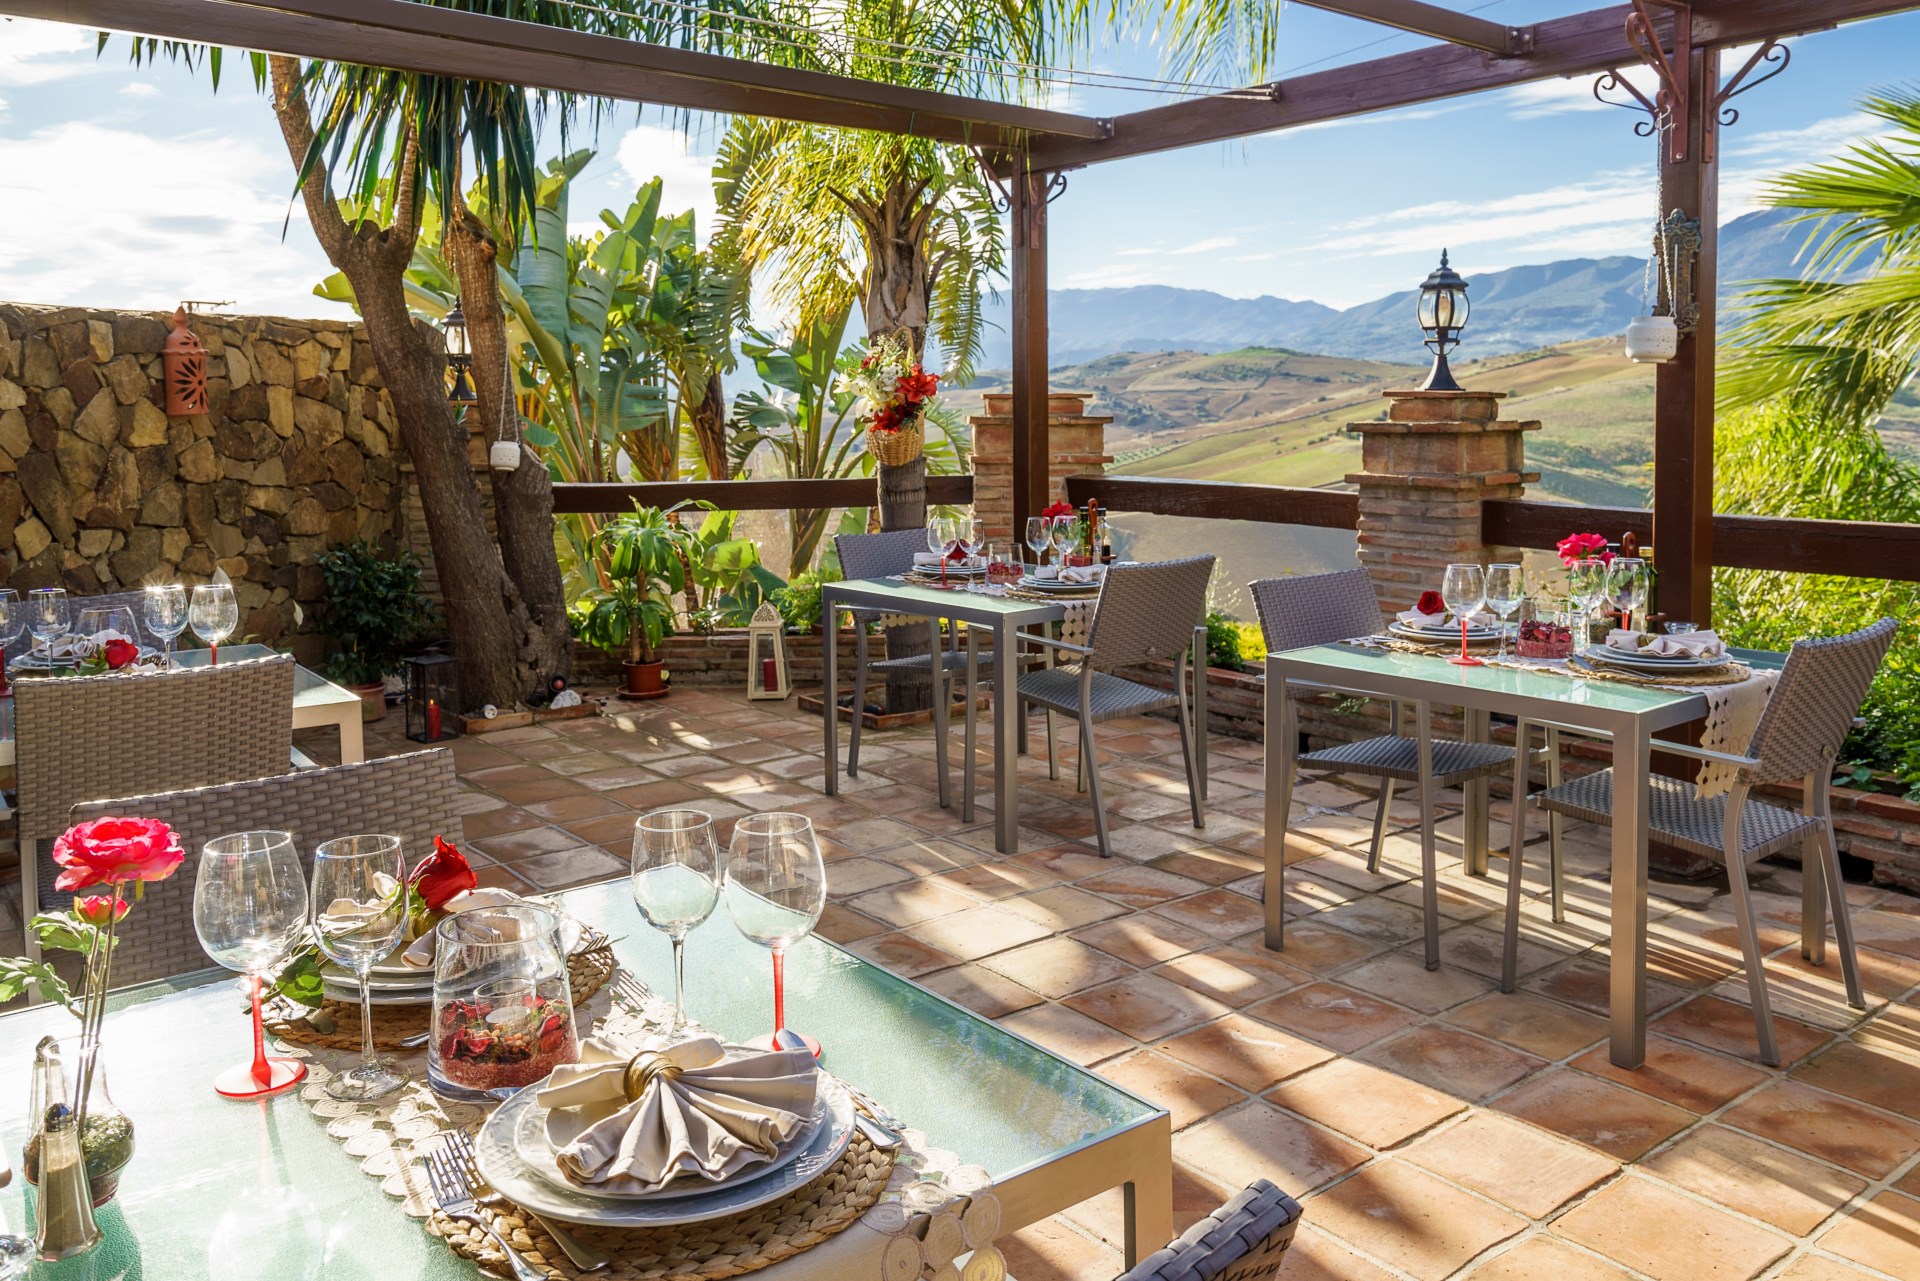 Terraza al aire libre con varias mesas del restaurante montadas con todo lujo de detalles, impresionantes vistas del valle al fondo